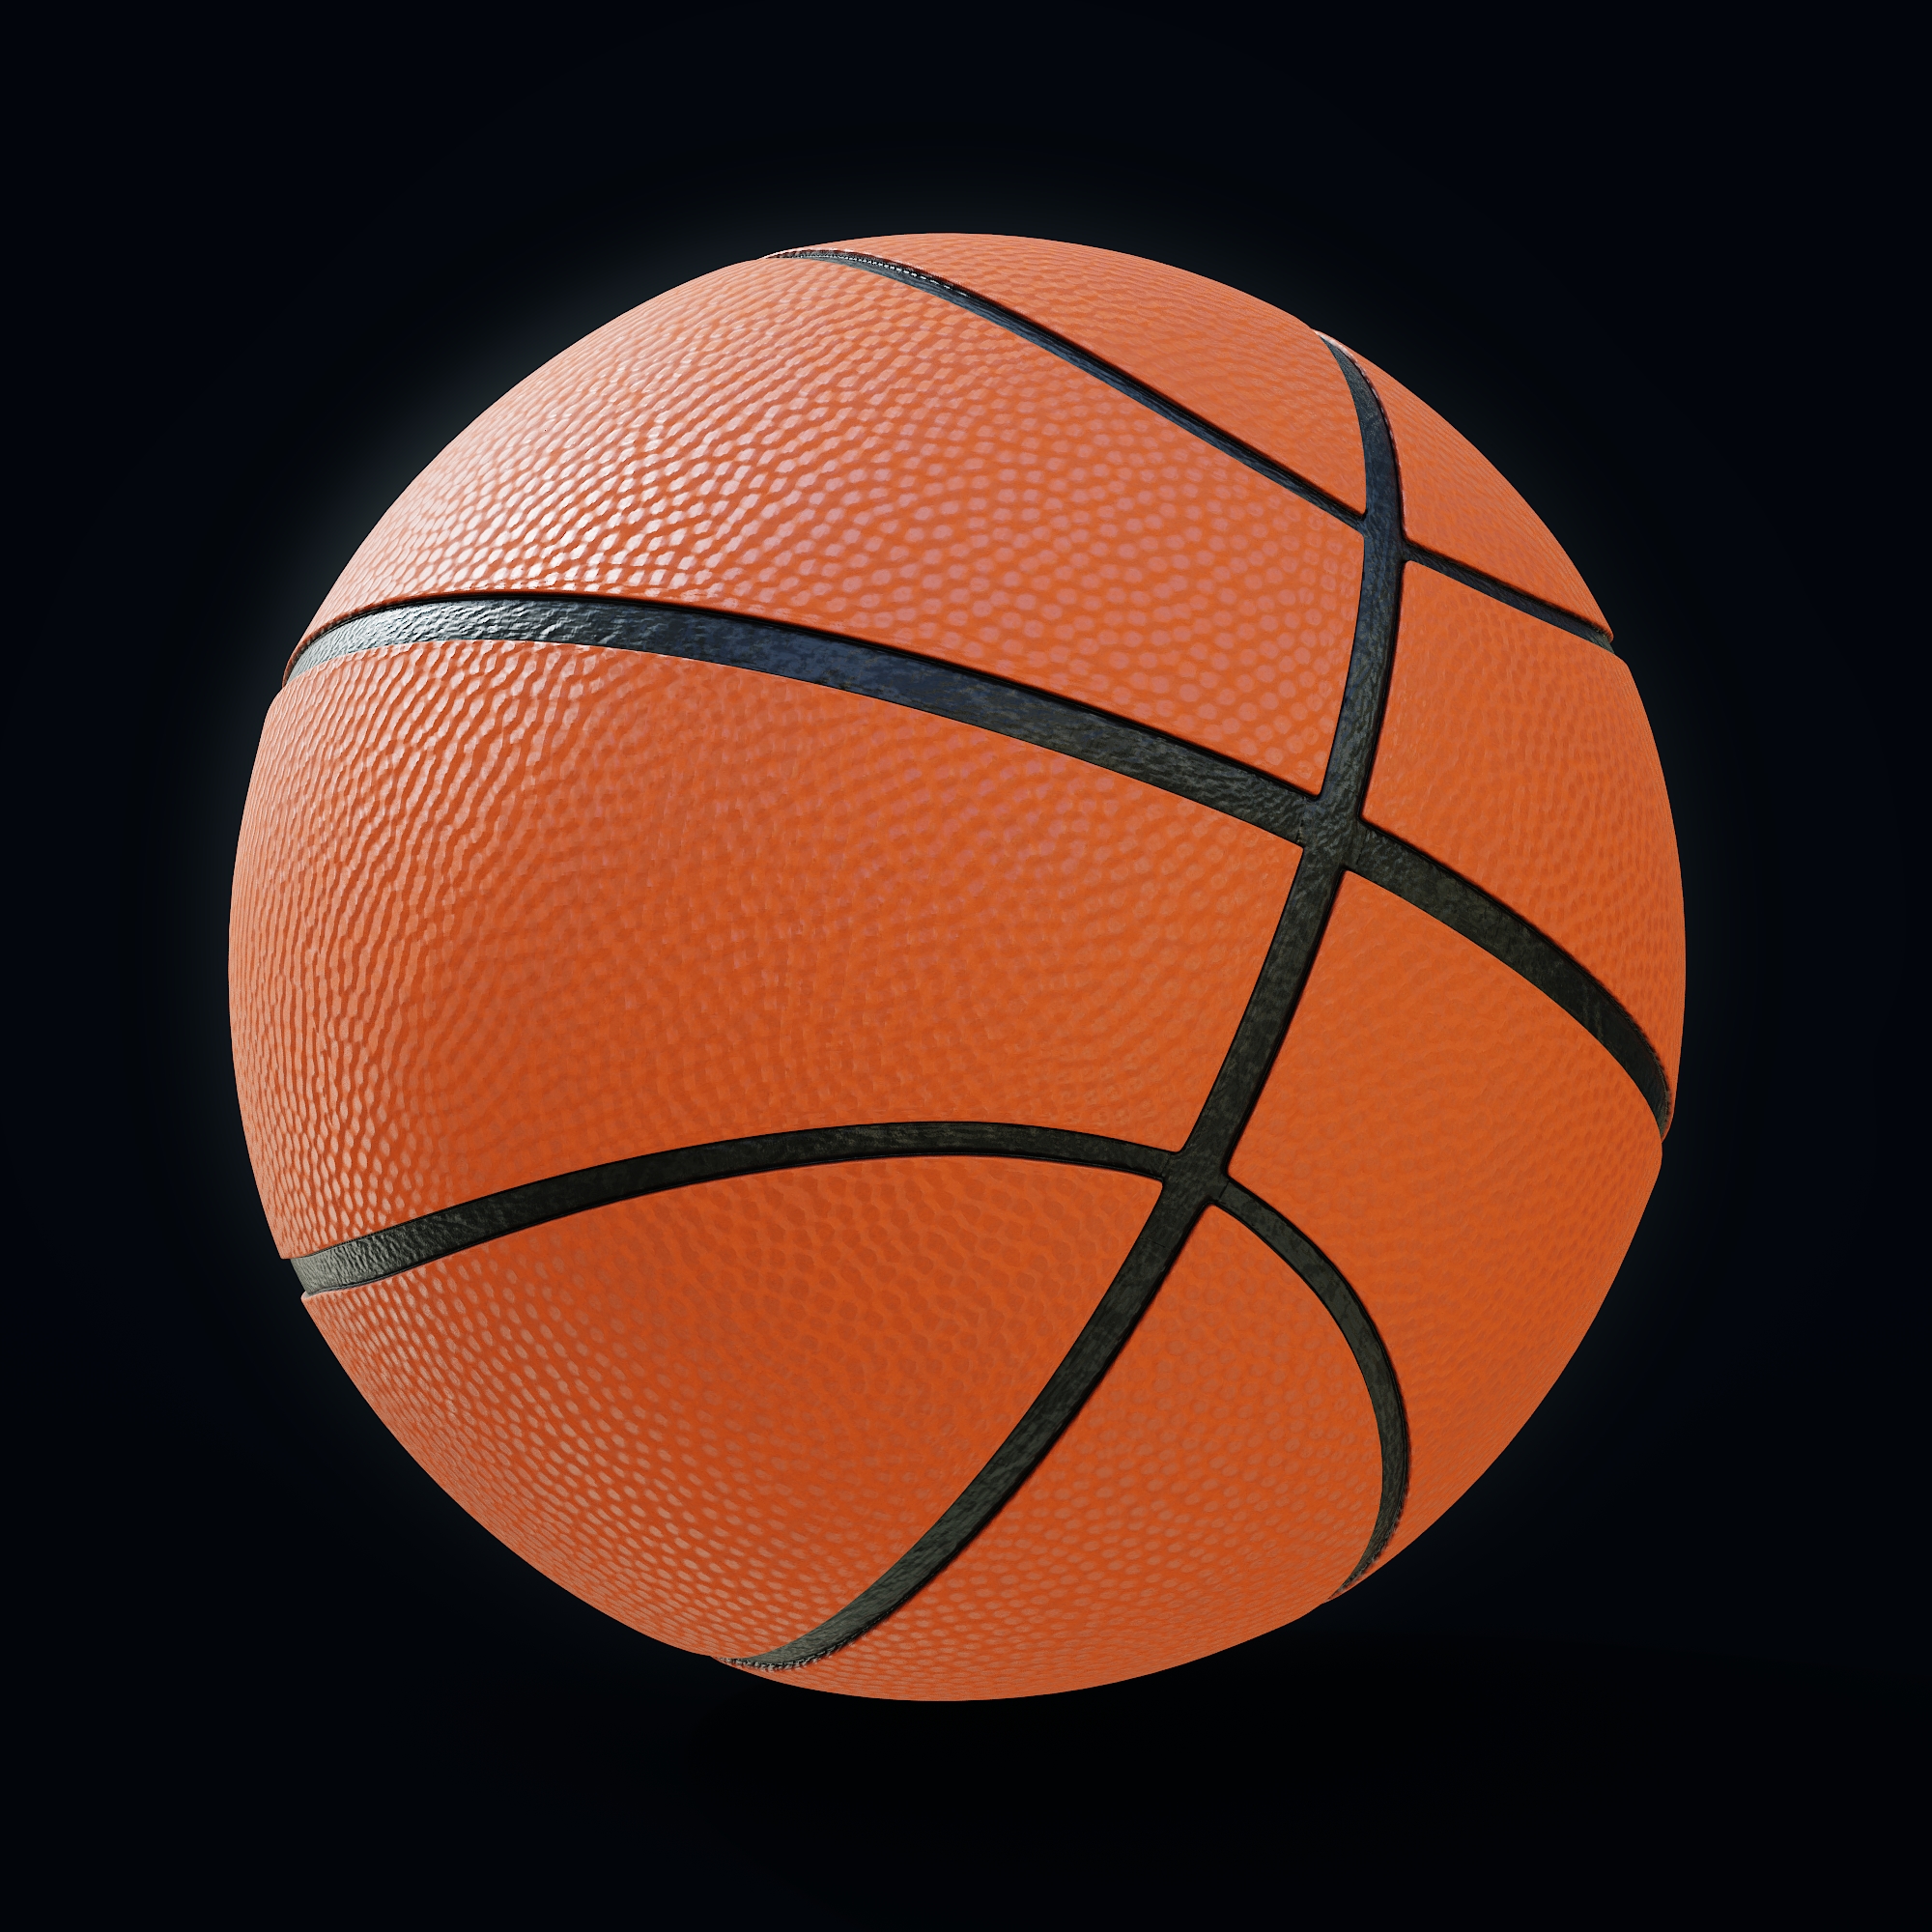 Creating a Basketball in Blender (Easy!!!) - BlenderNation